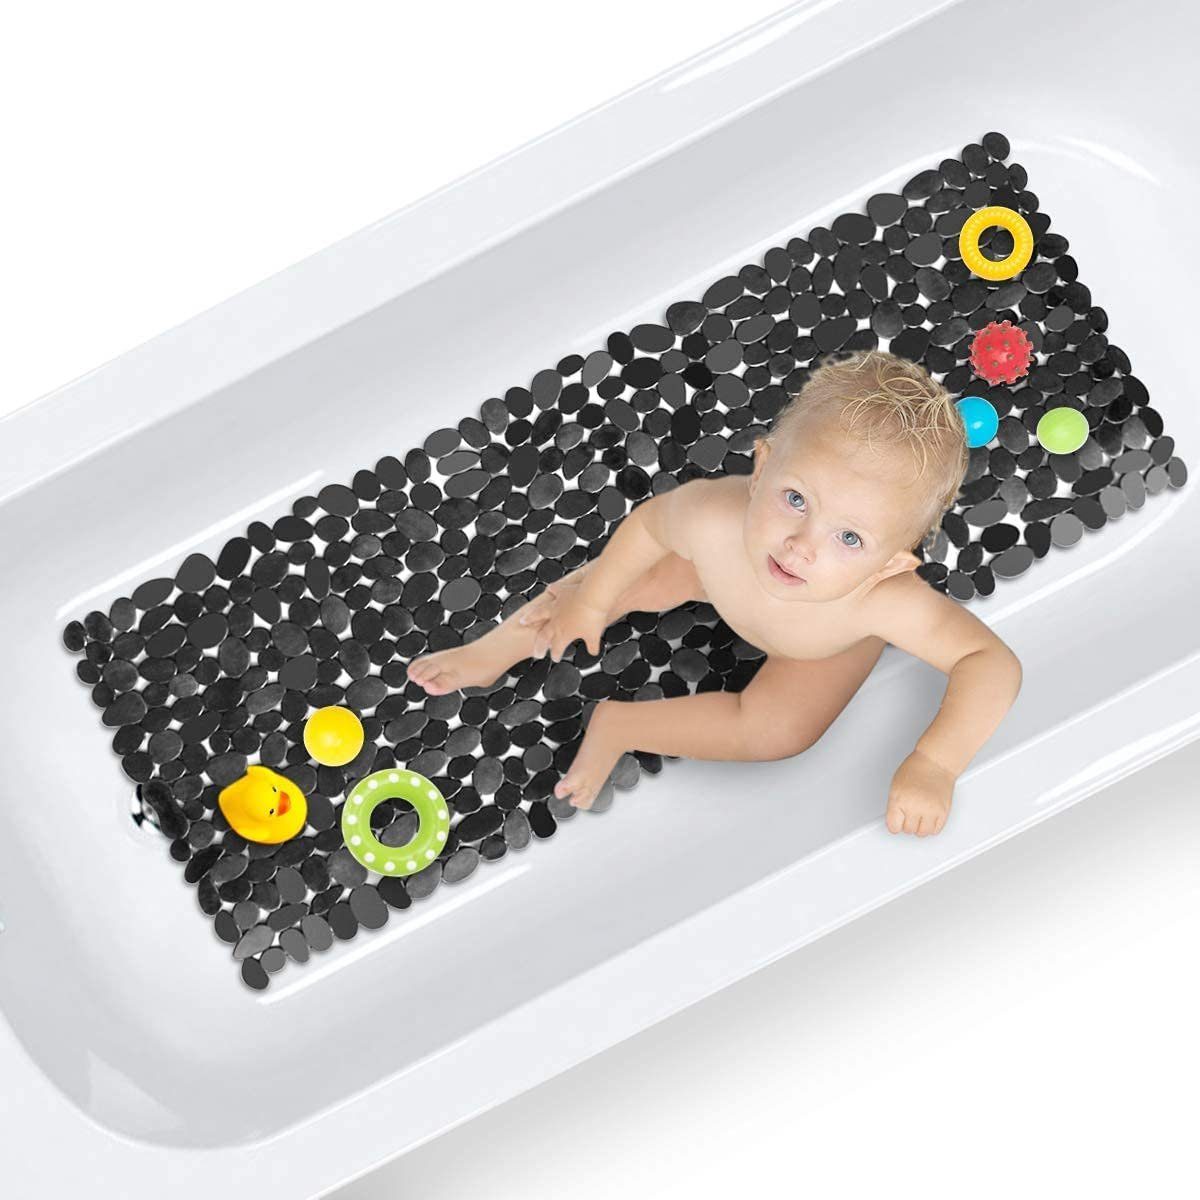 Hermosapoty Baby Dusche Badematte rutschfeste Badematte Neugeborenen Sicher 